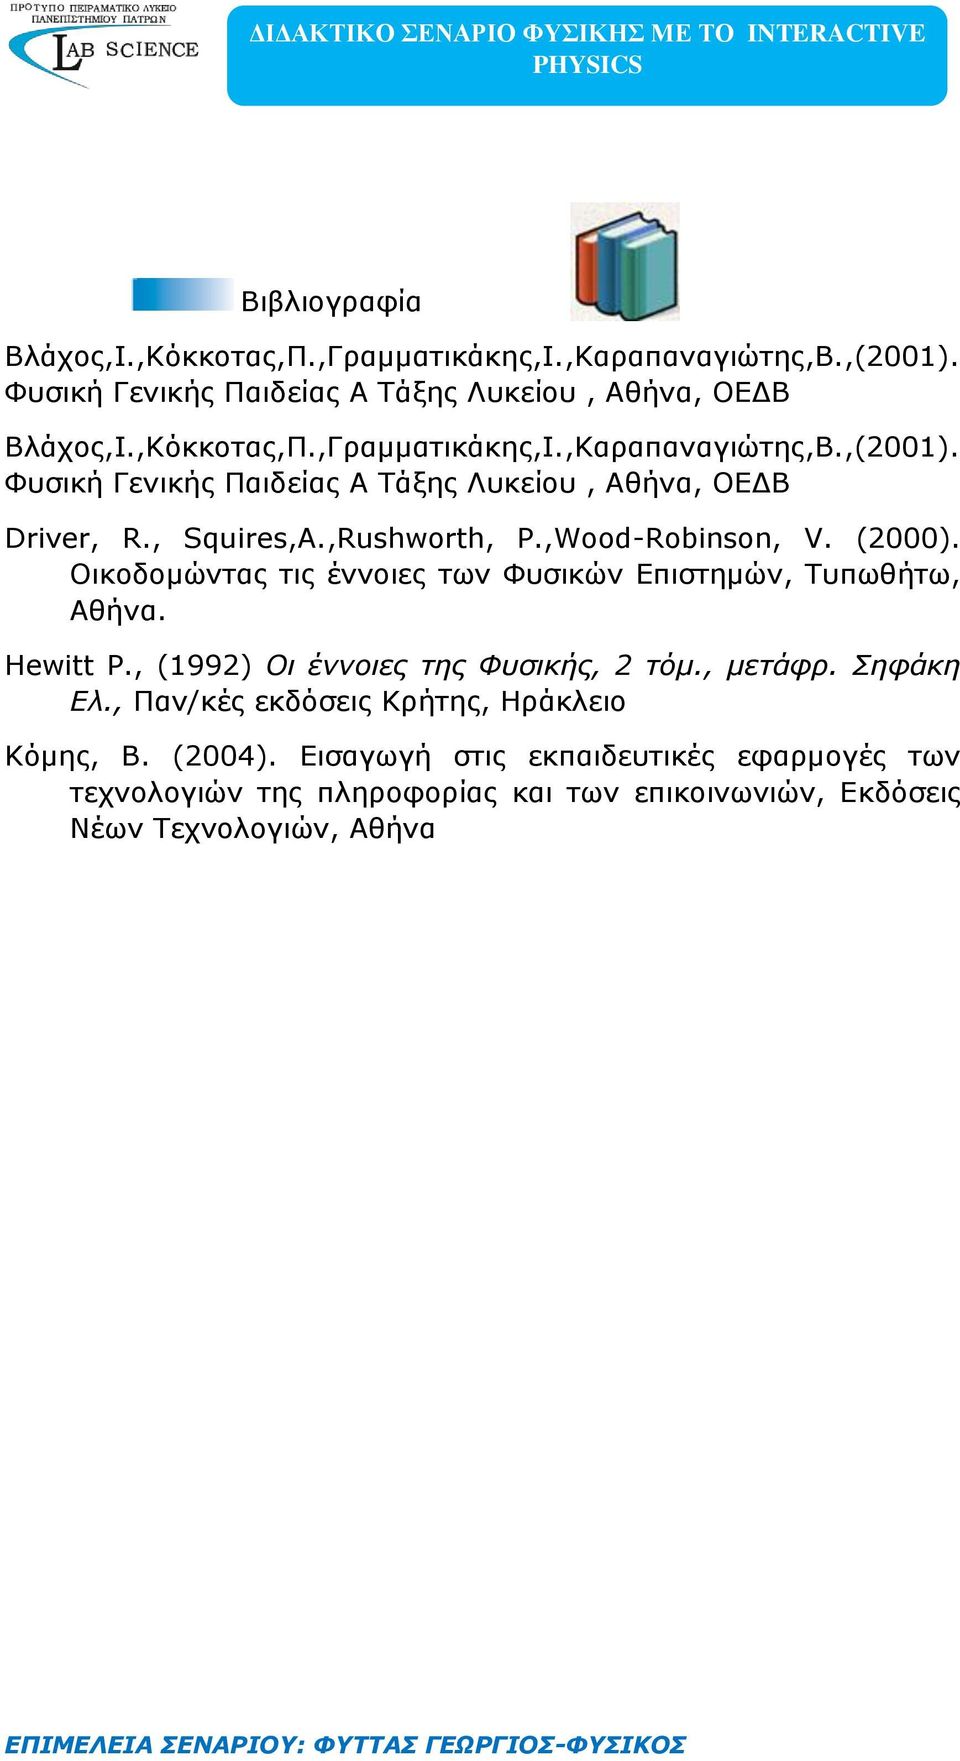 , (1992) Οι έννοιες της Φυσικής, 2 τόμ., μετάφρ. Σηφάκη Ελ., Παν/κές εκδόσεις Κρήτης, Ηράκλειο Kόμης, Β. (2004).